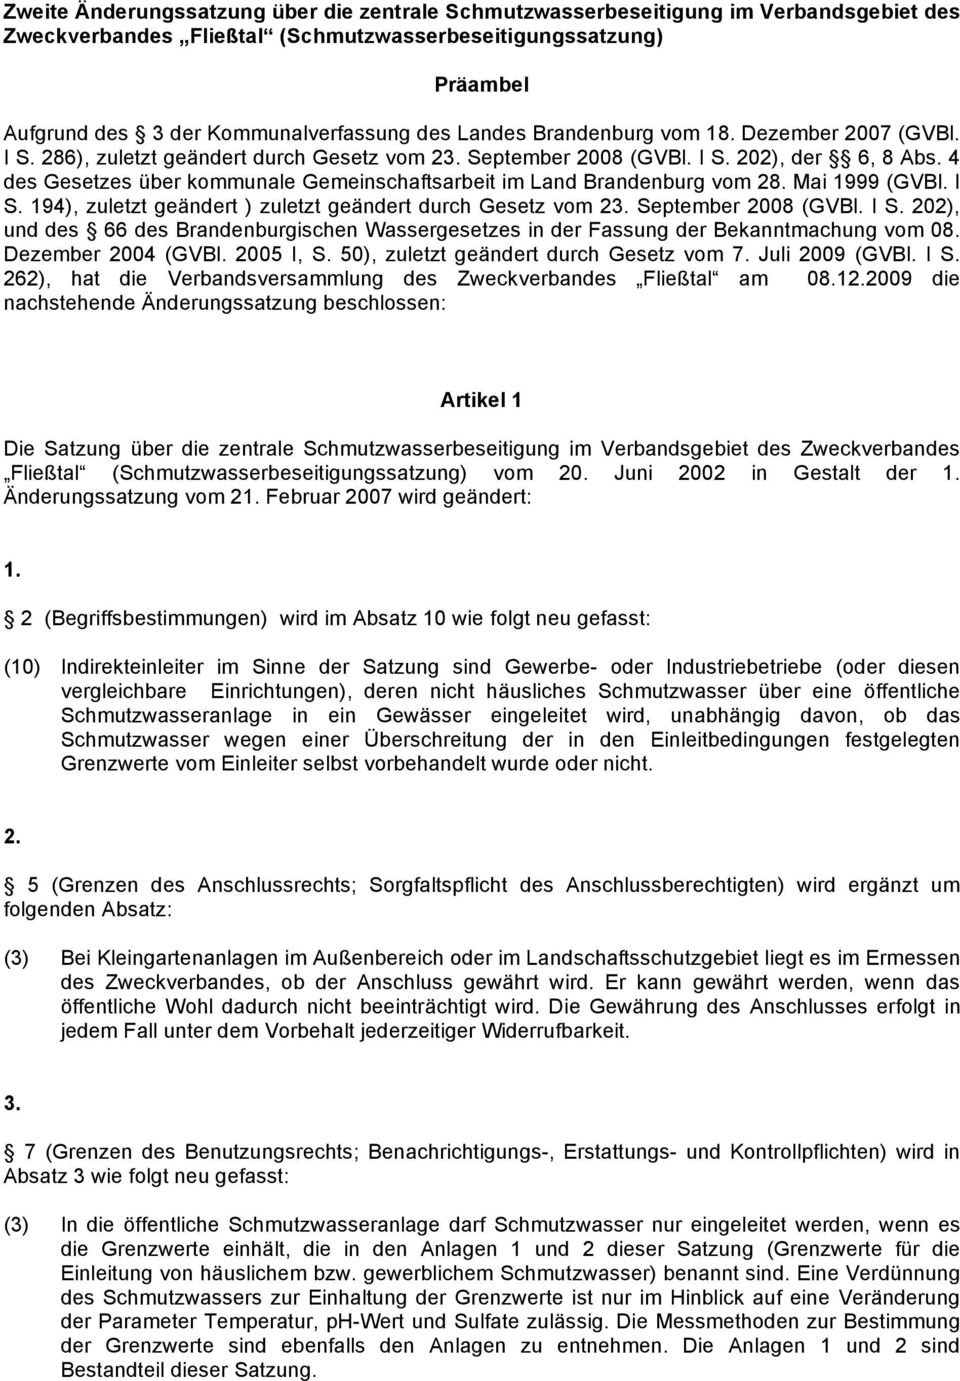 4 des Gesetzes über kommunale Gemeinschaftsarbeit im Land Brandenburg vom 28. Mai 1999 (GVBl. I S. 194), zuletzt geändert ) zuletzt geändert durch Gesetz vom 23. September 2008 (GVBl. I S. 202), und des 66 des Brandenburgischen Wassergesetzes in der Fassung der Bekanntmachung vom 08.